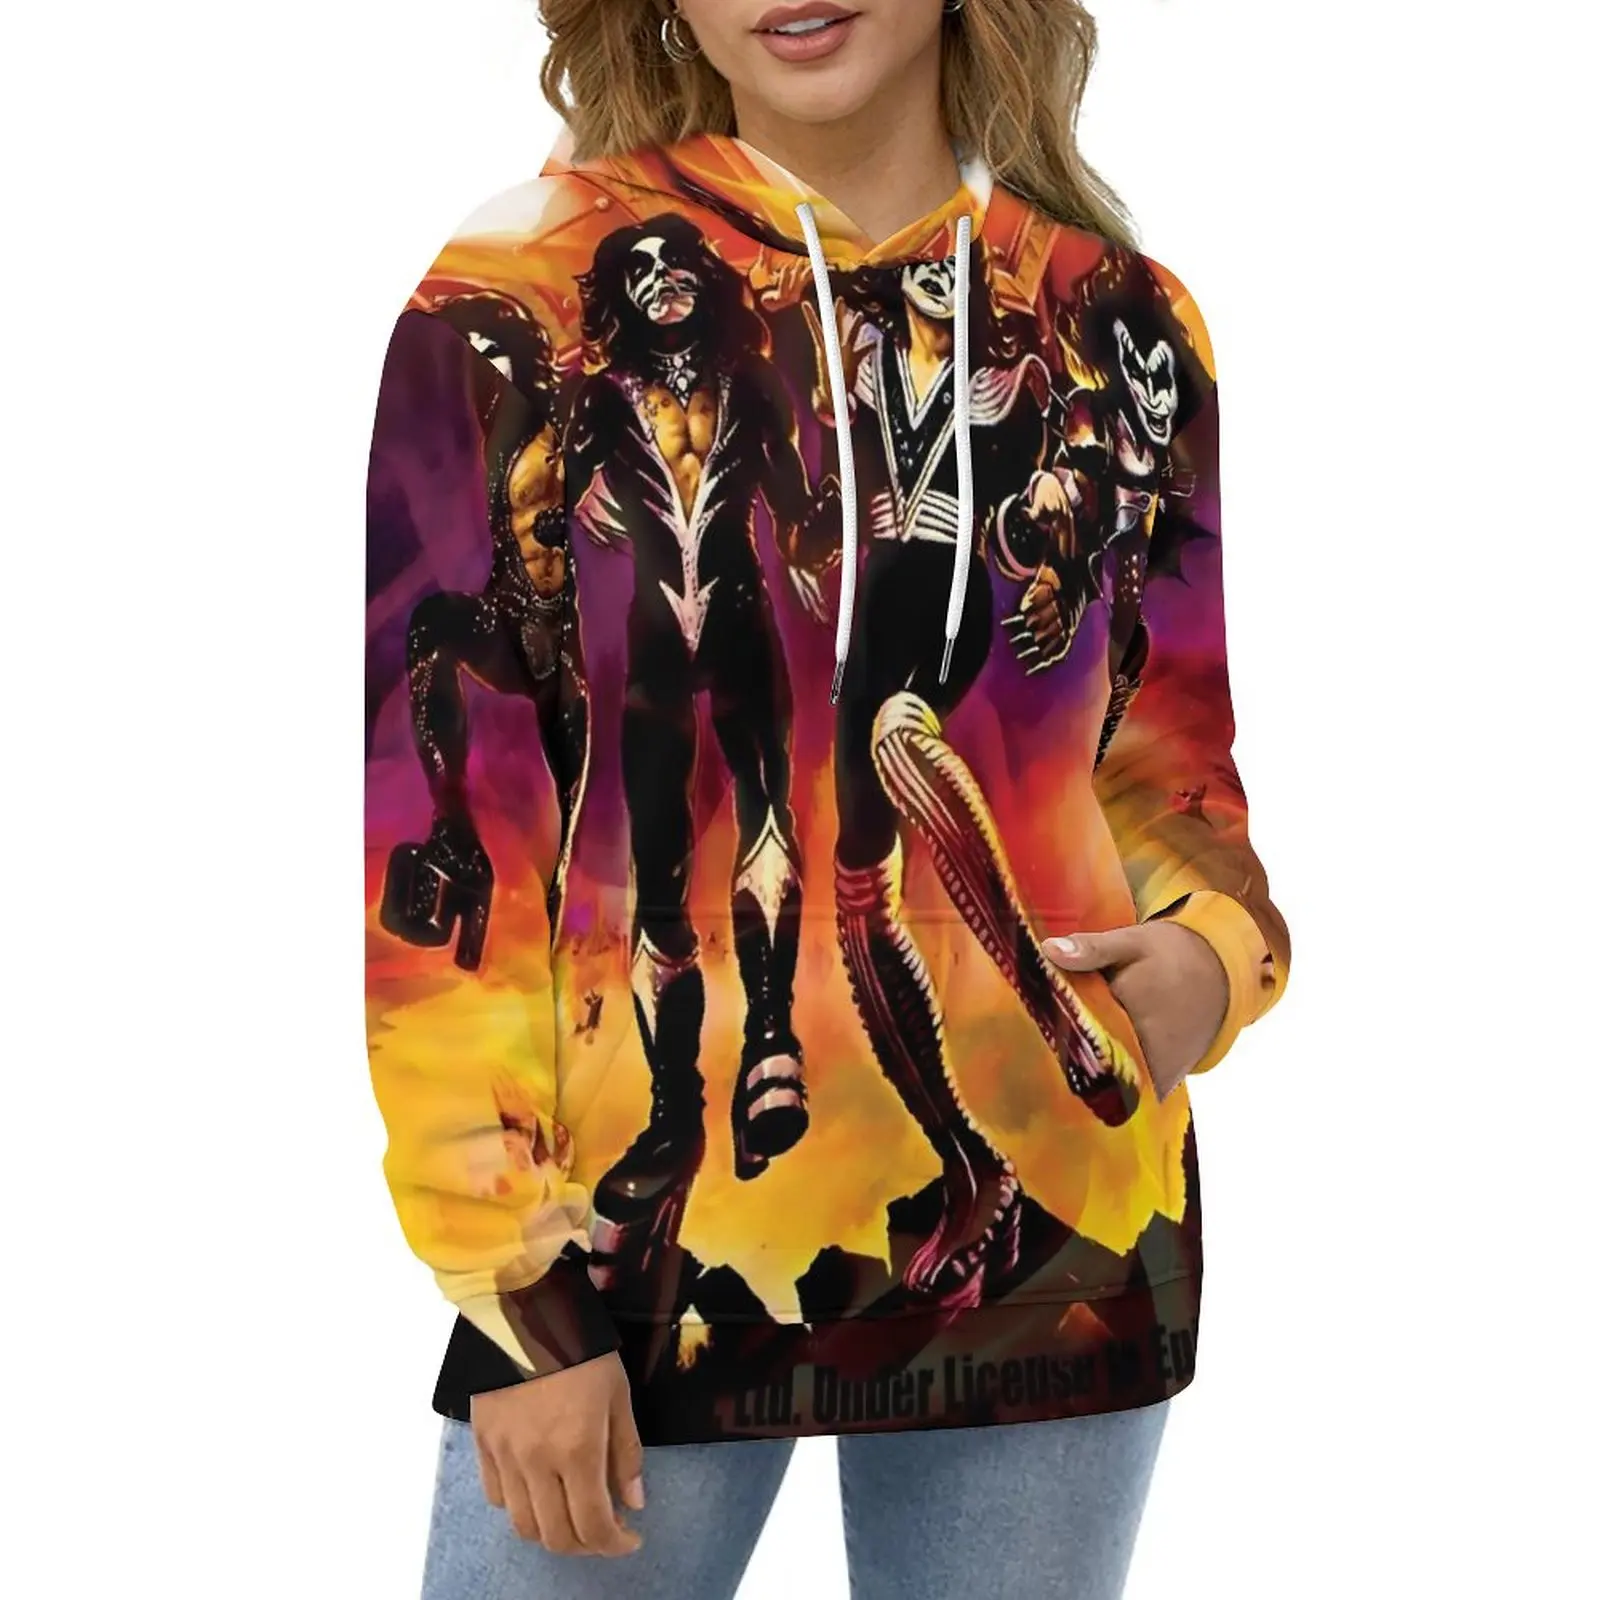 

Худи с принтом рок-группы Kiss Band Y2k, Повседневный пуловер в уличном стиле, толстовка с длинным рукавом и графическим принтом, большой размер 5XL, 6XL